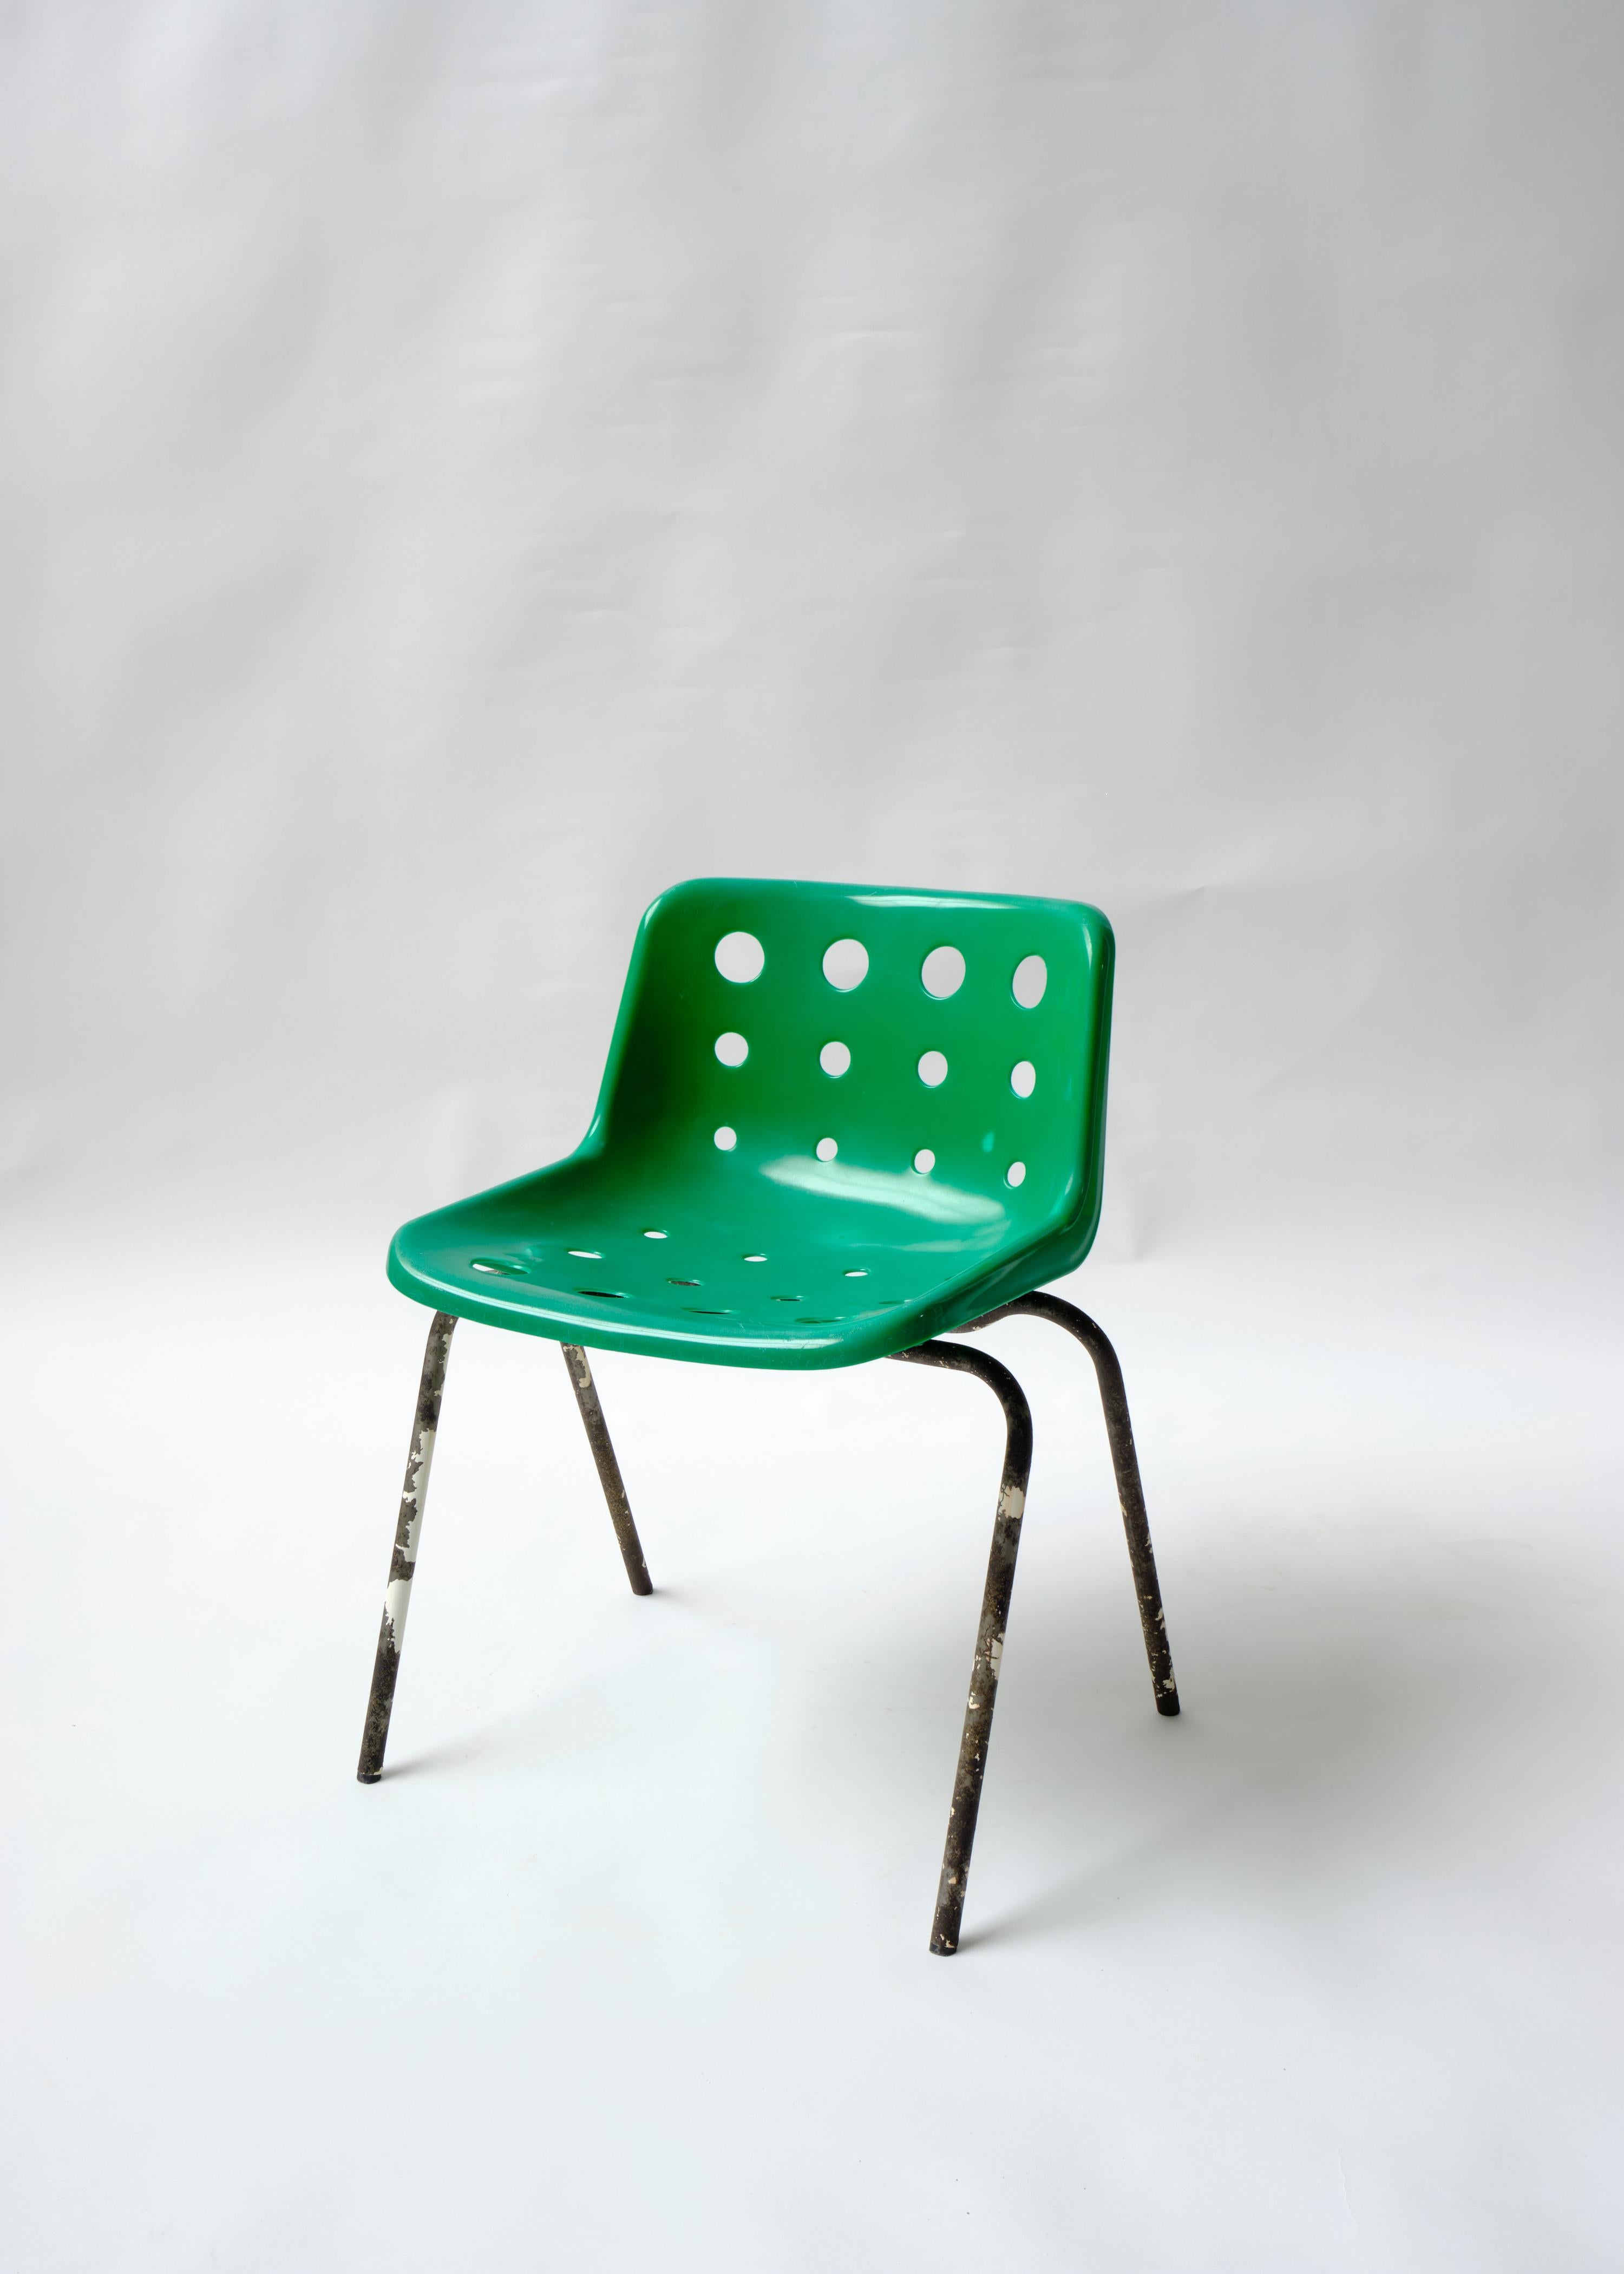 Ikonisch, retro, stapelbar. Klassisches britisches Design des 20. Jahrhunderts. 

Der Polo-Stuhl war eine der späteren Versionen des ursprünglichen geformten Polyside-Stuhls von Robin Day, der in öffentlichen Einrichtungen auf der ganzen Welt so